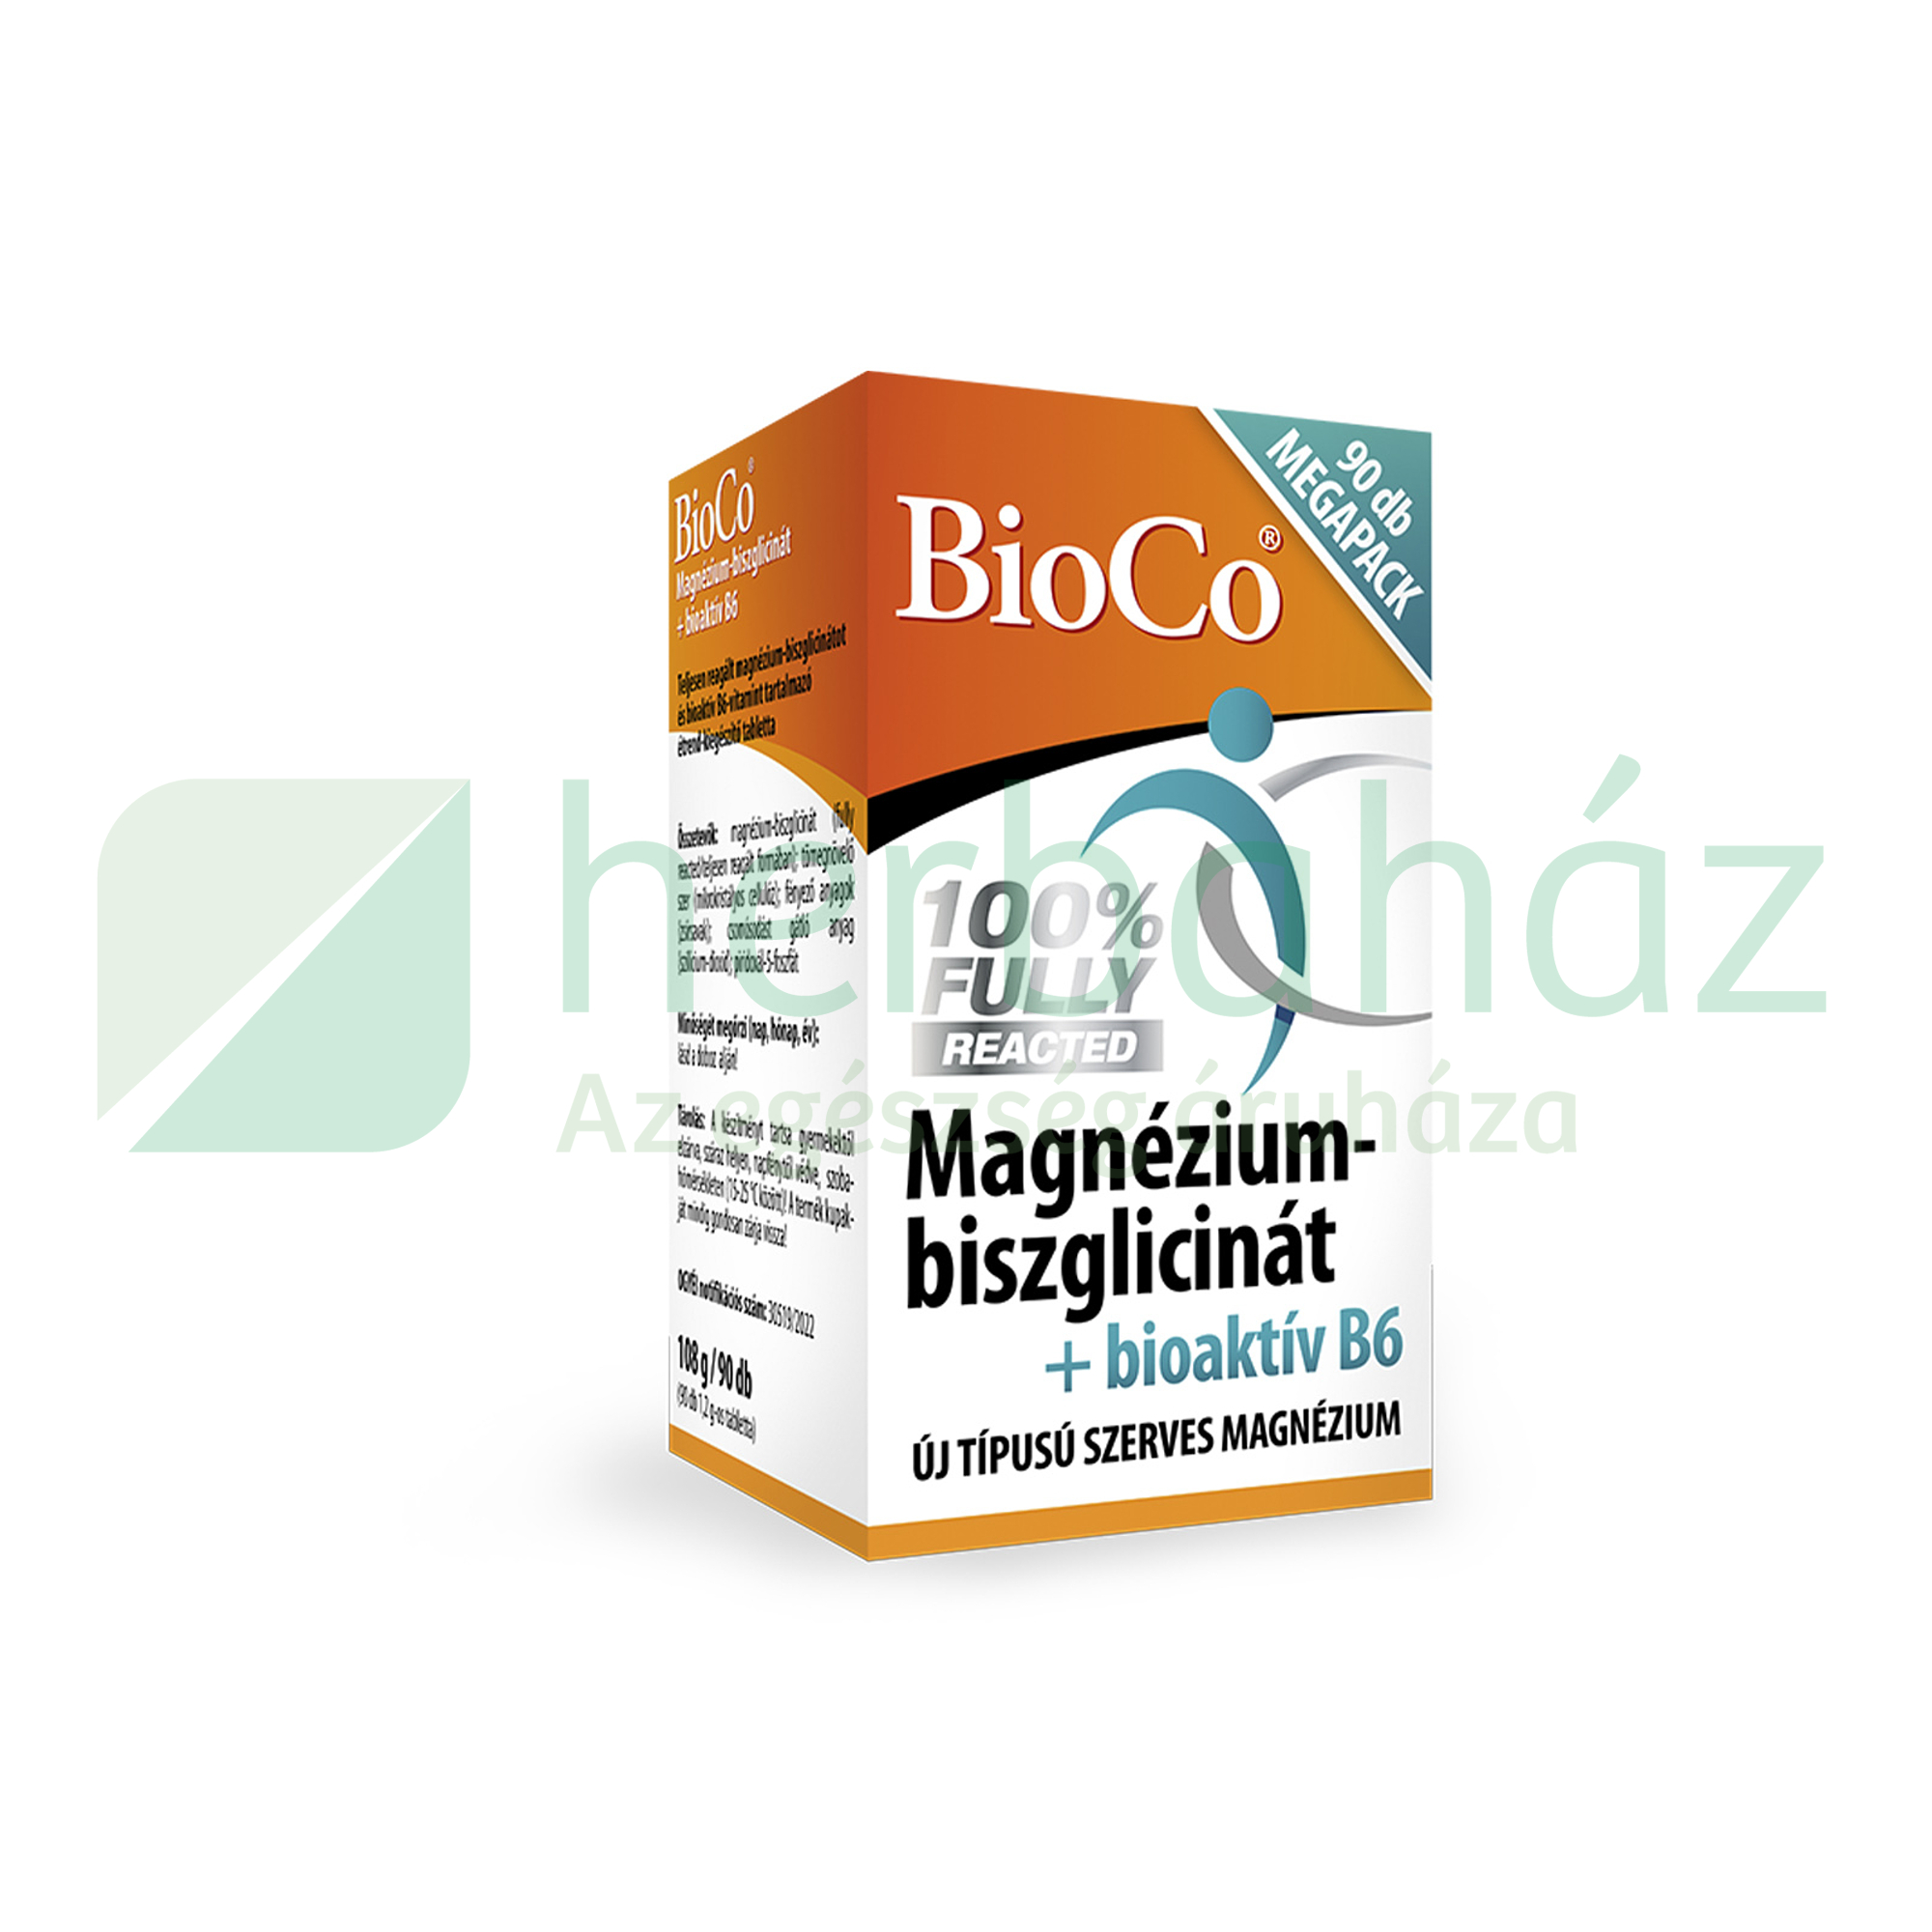 BIOCO MAGNÉZIUM-BISZGLICINÁT+BIOAKTÍV B6 MEGAPACK TABLETTA 90DB